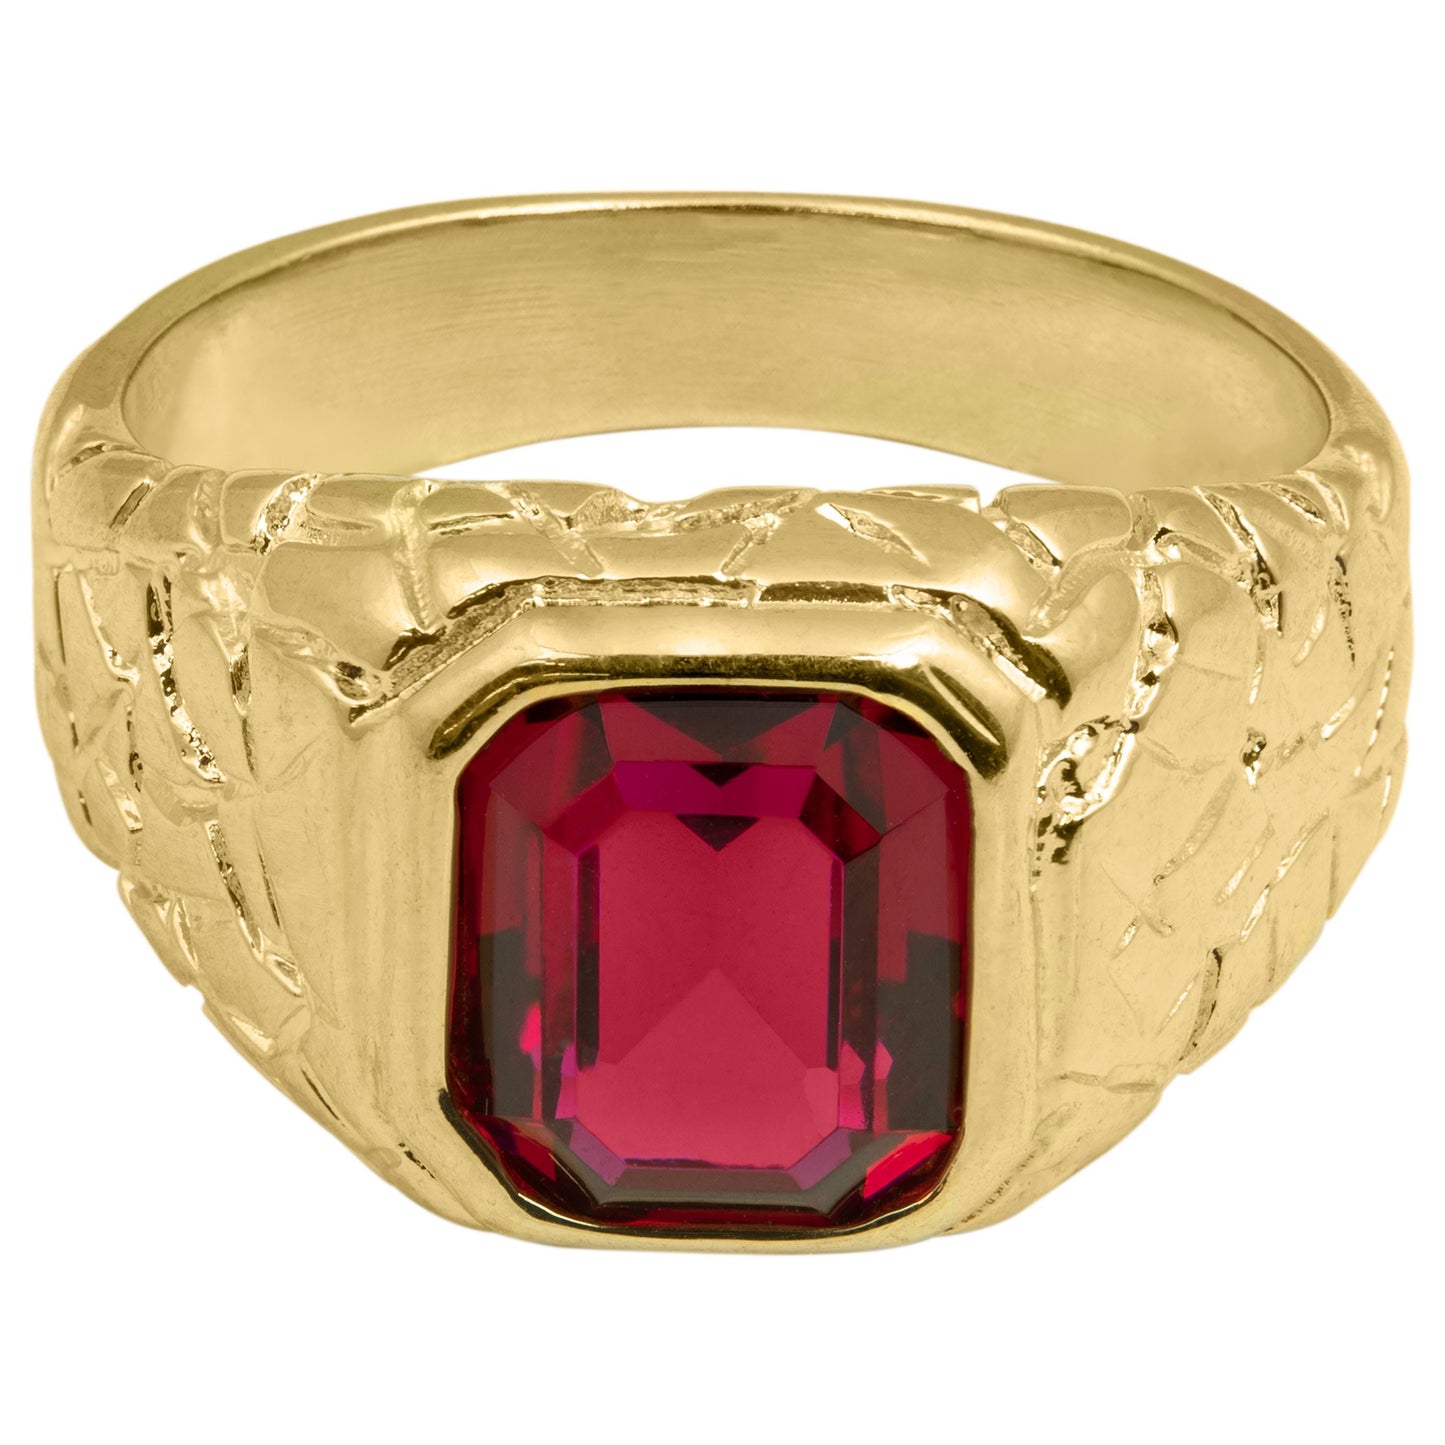 Vintage Ring 1980s Mens Ruby Crystal 18kt Gold Plated Antique for Men #R6004